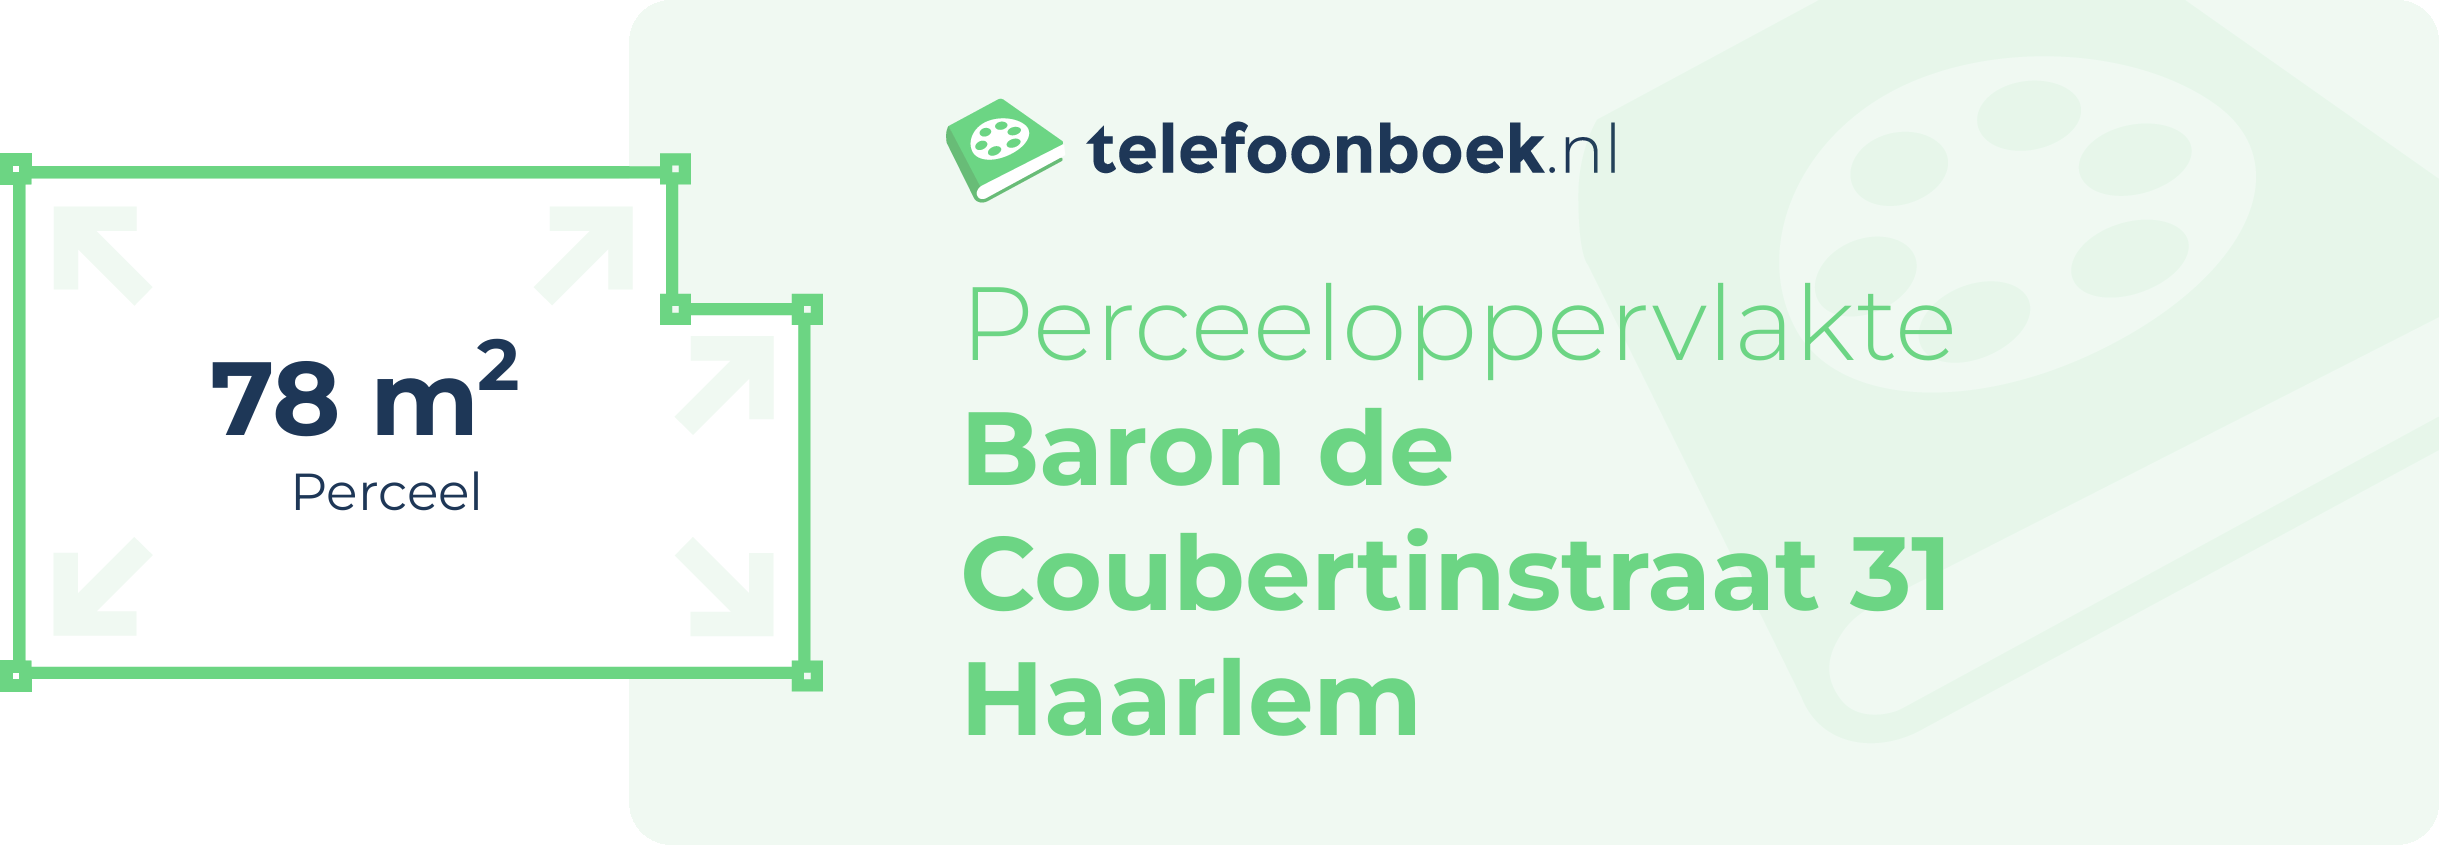 Perceeloppervlakte Baron De Coubertinstraat 31 Haarlem